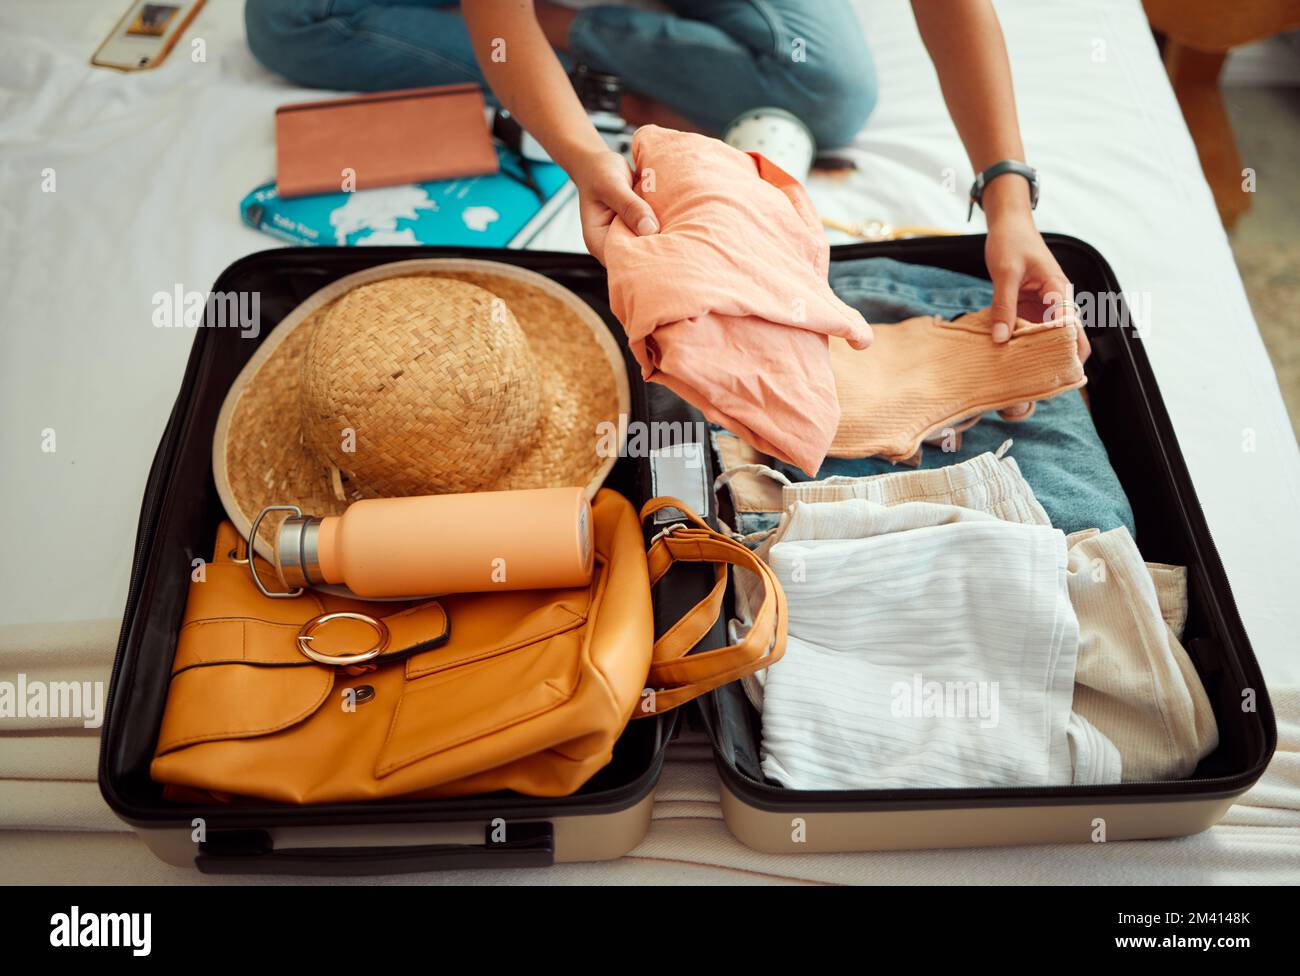 Hände, Frau und Koffer auf einem Bett für Reisen, Abenteuer und Sommerurlaub, Packungen und Kleidung. Hand, Mädchen und Gepäck in einem Schlafzimmer zum Reisen Stockfoto